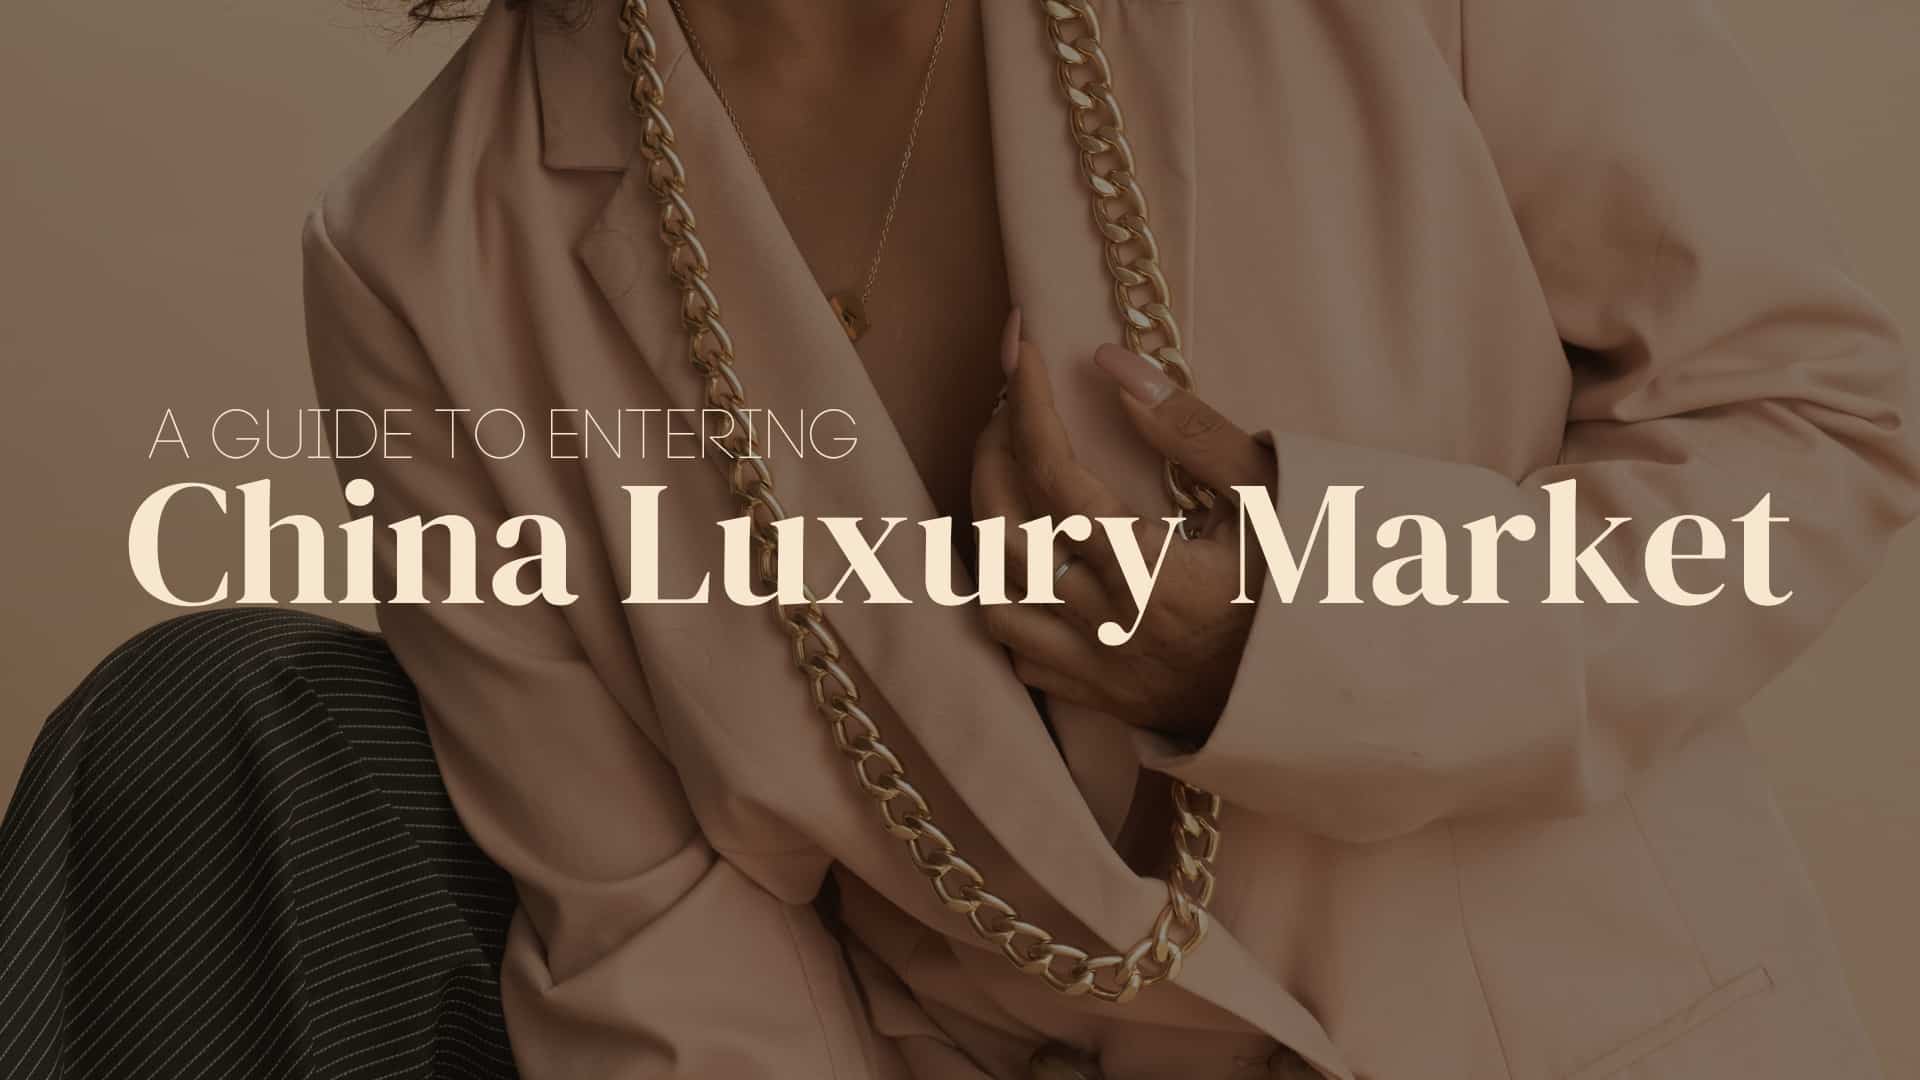 China luxury market